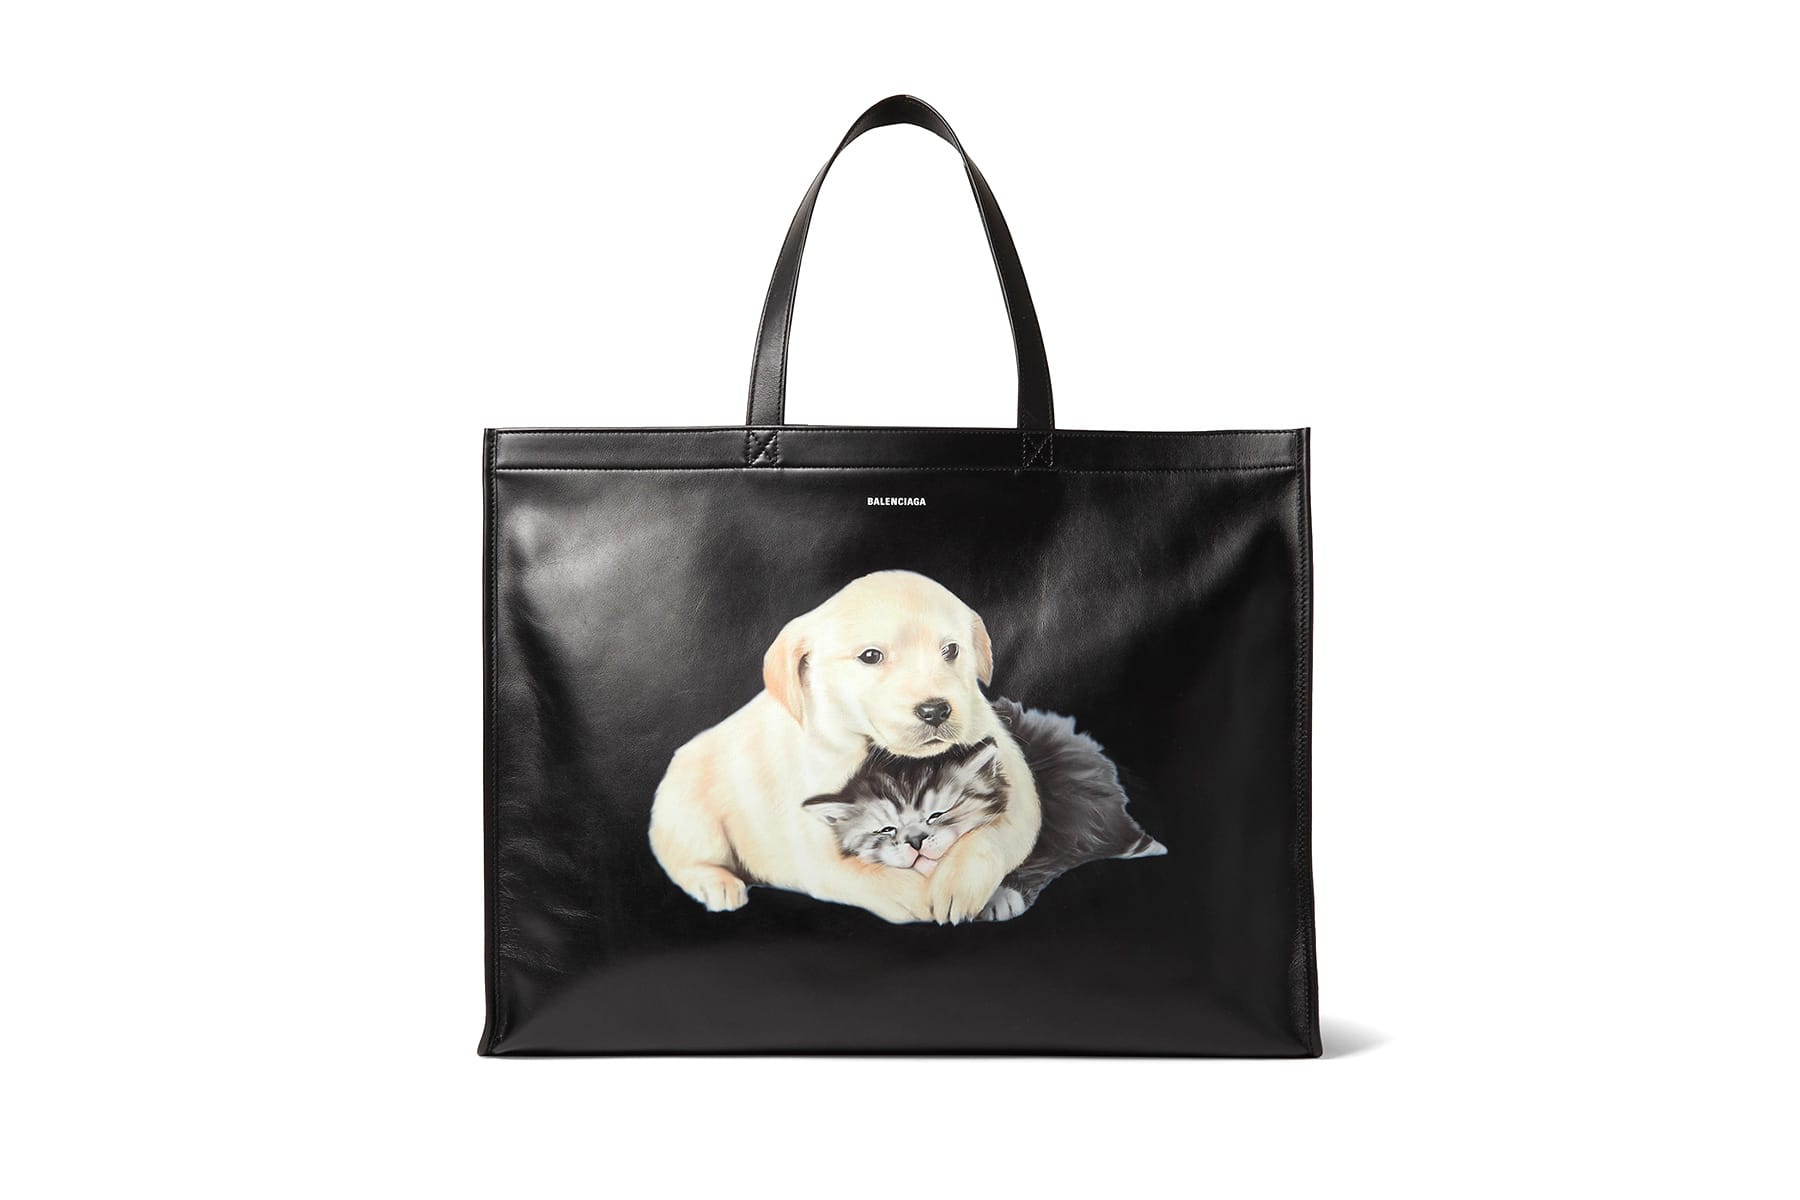 balenciaga puppy and kitten bag